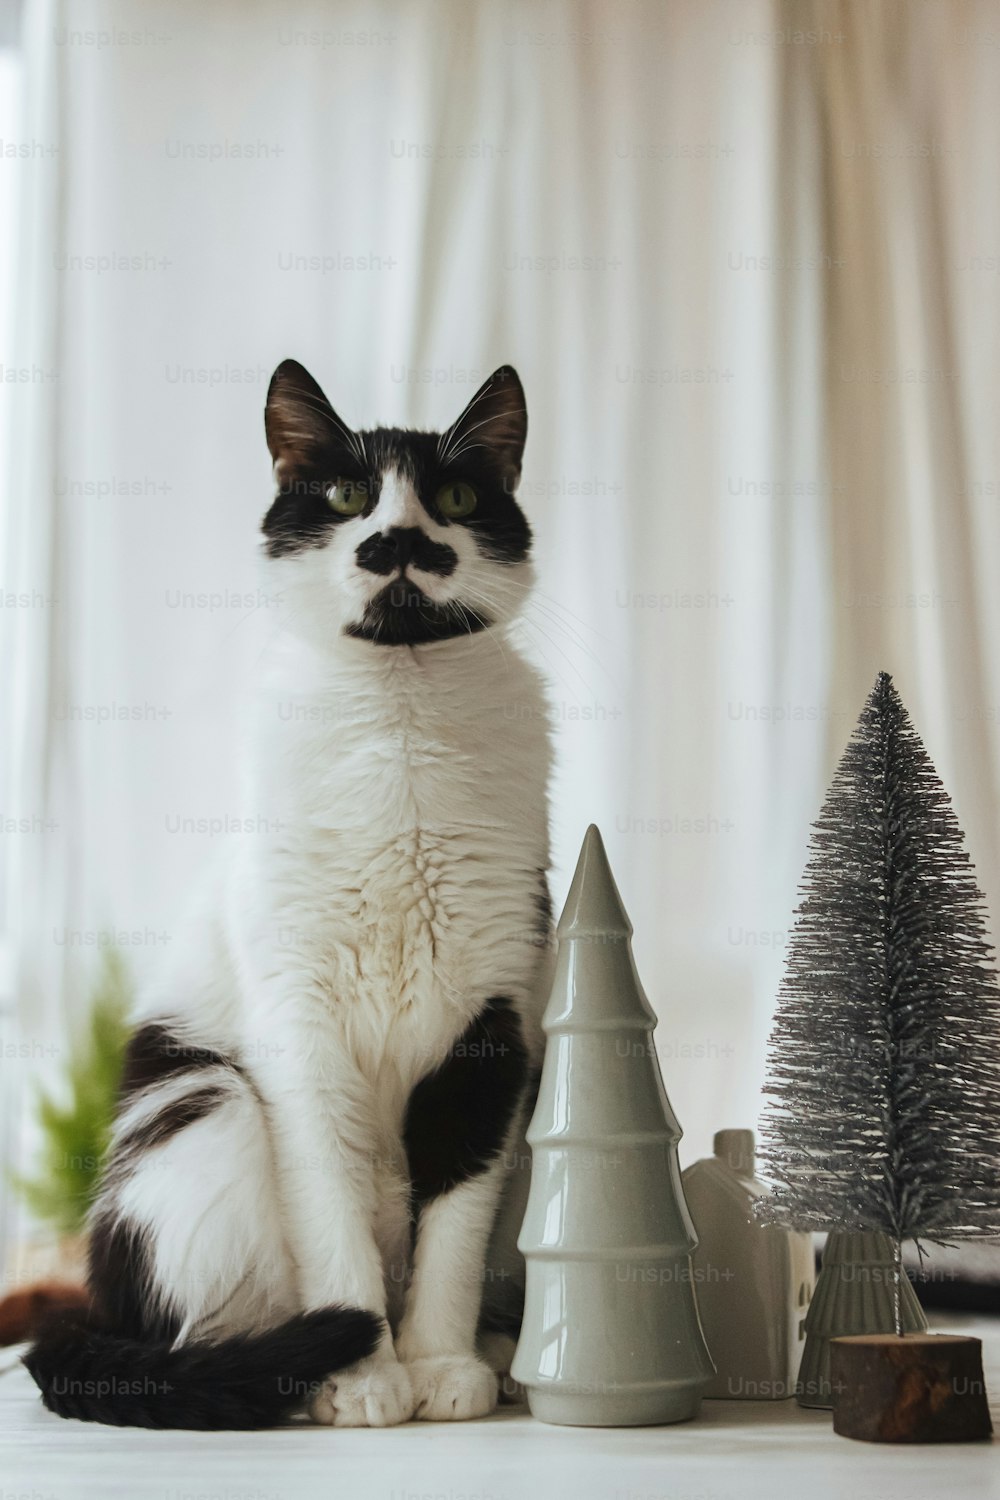 Süße Katze sitzt an modernen Weihnachtsdekorationen, kleinen Bäumen und Häusern. Süße schwarz-weiße Katze, die an Miniatur-Dorf-, Haus- und Weihnachtsbäumen im festlichen Raum posiert. Frohe Weihnachten!